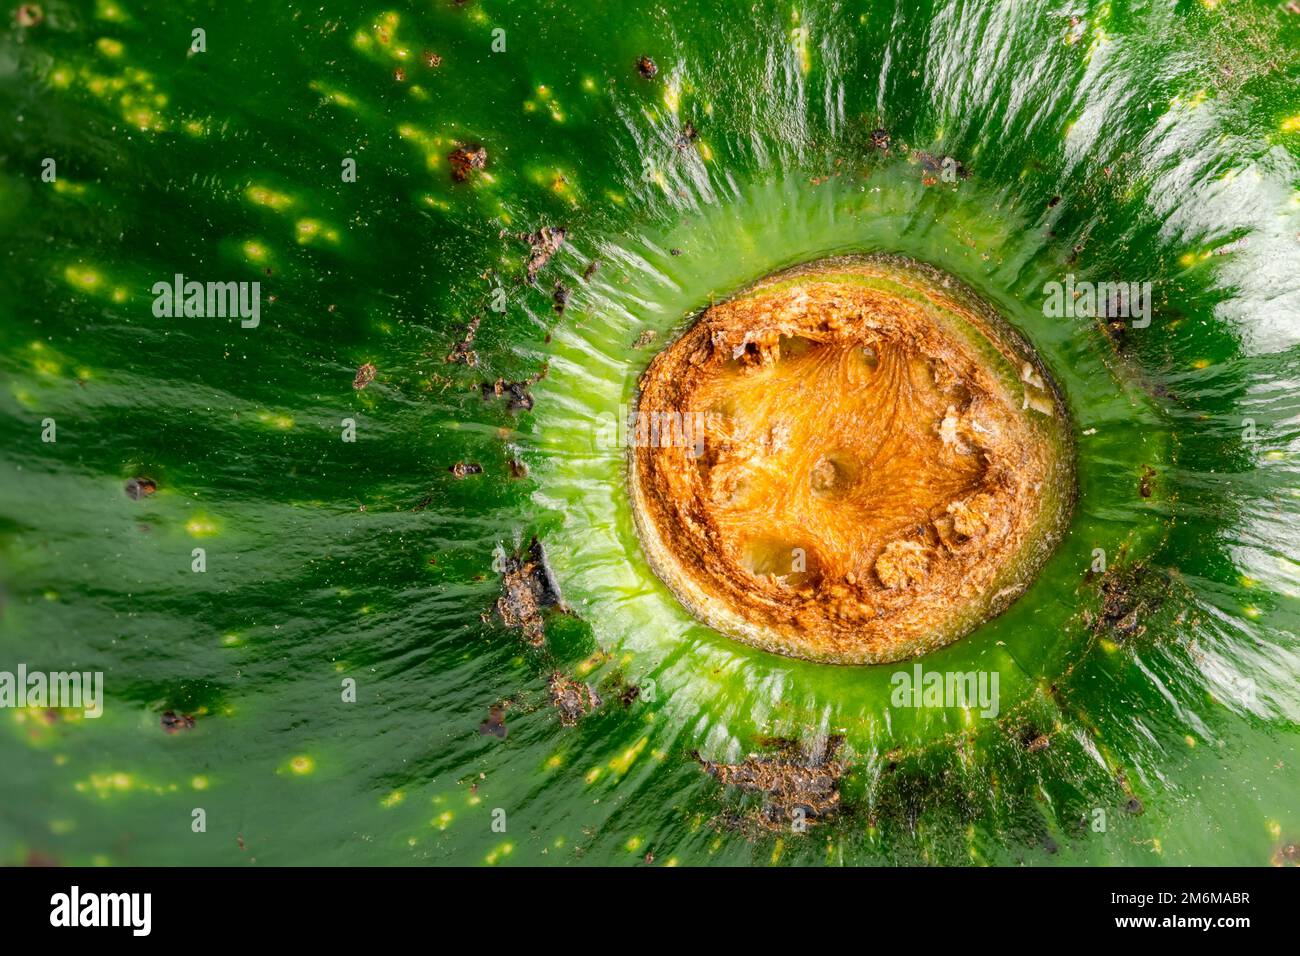 Extreme closeup view of green avocado stalk. Stock Photo